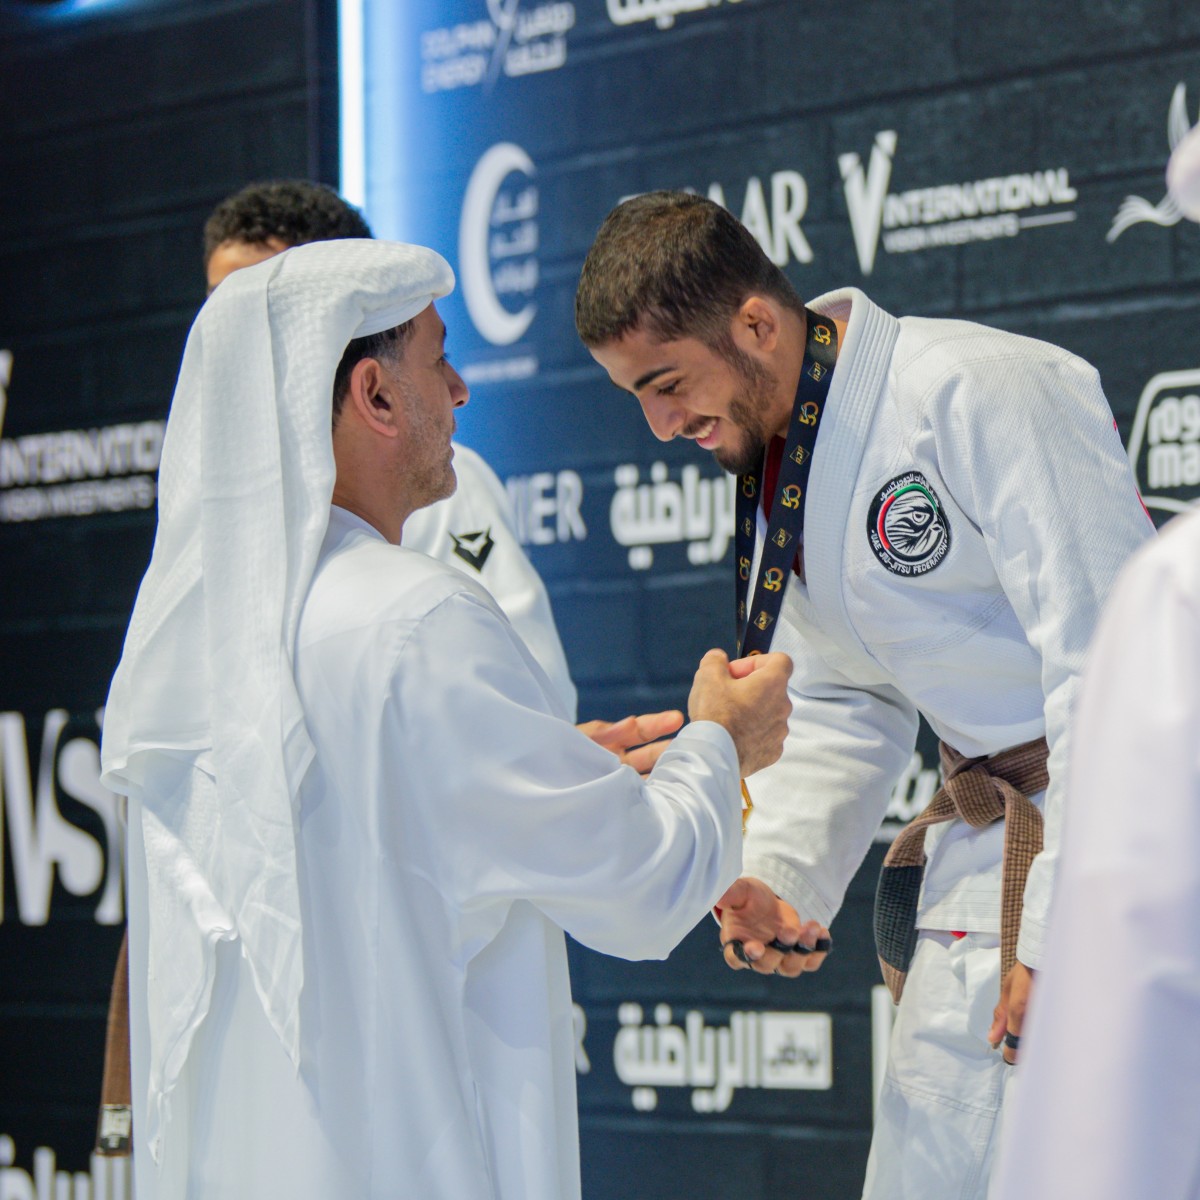 ABU DHABI WORLD PARA JIU-JITSU CHAMPIONSHIP 2023 - UAE Jiu Jitsu Federation